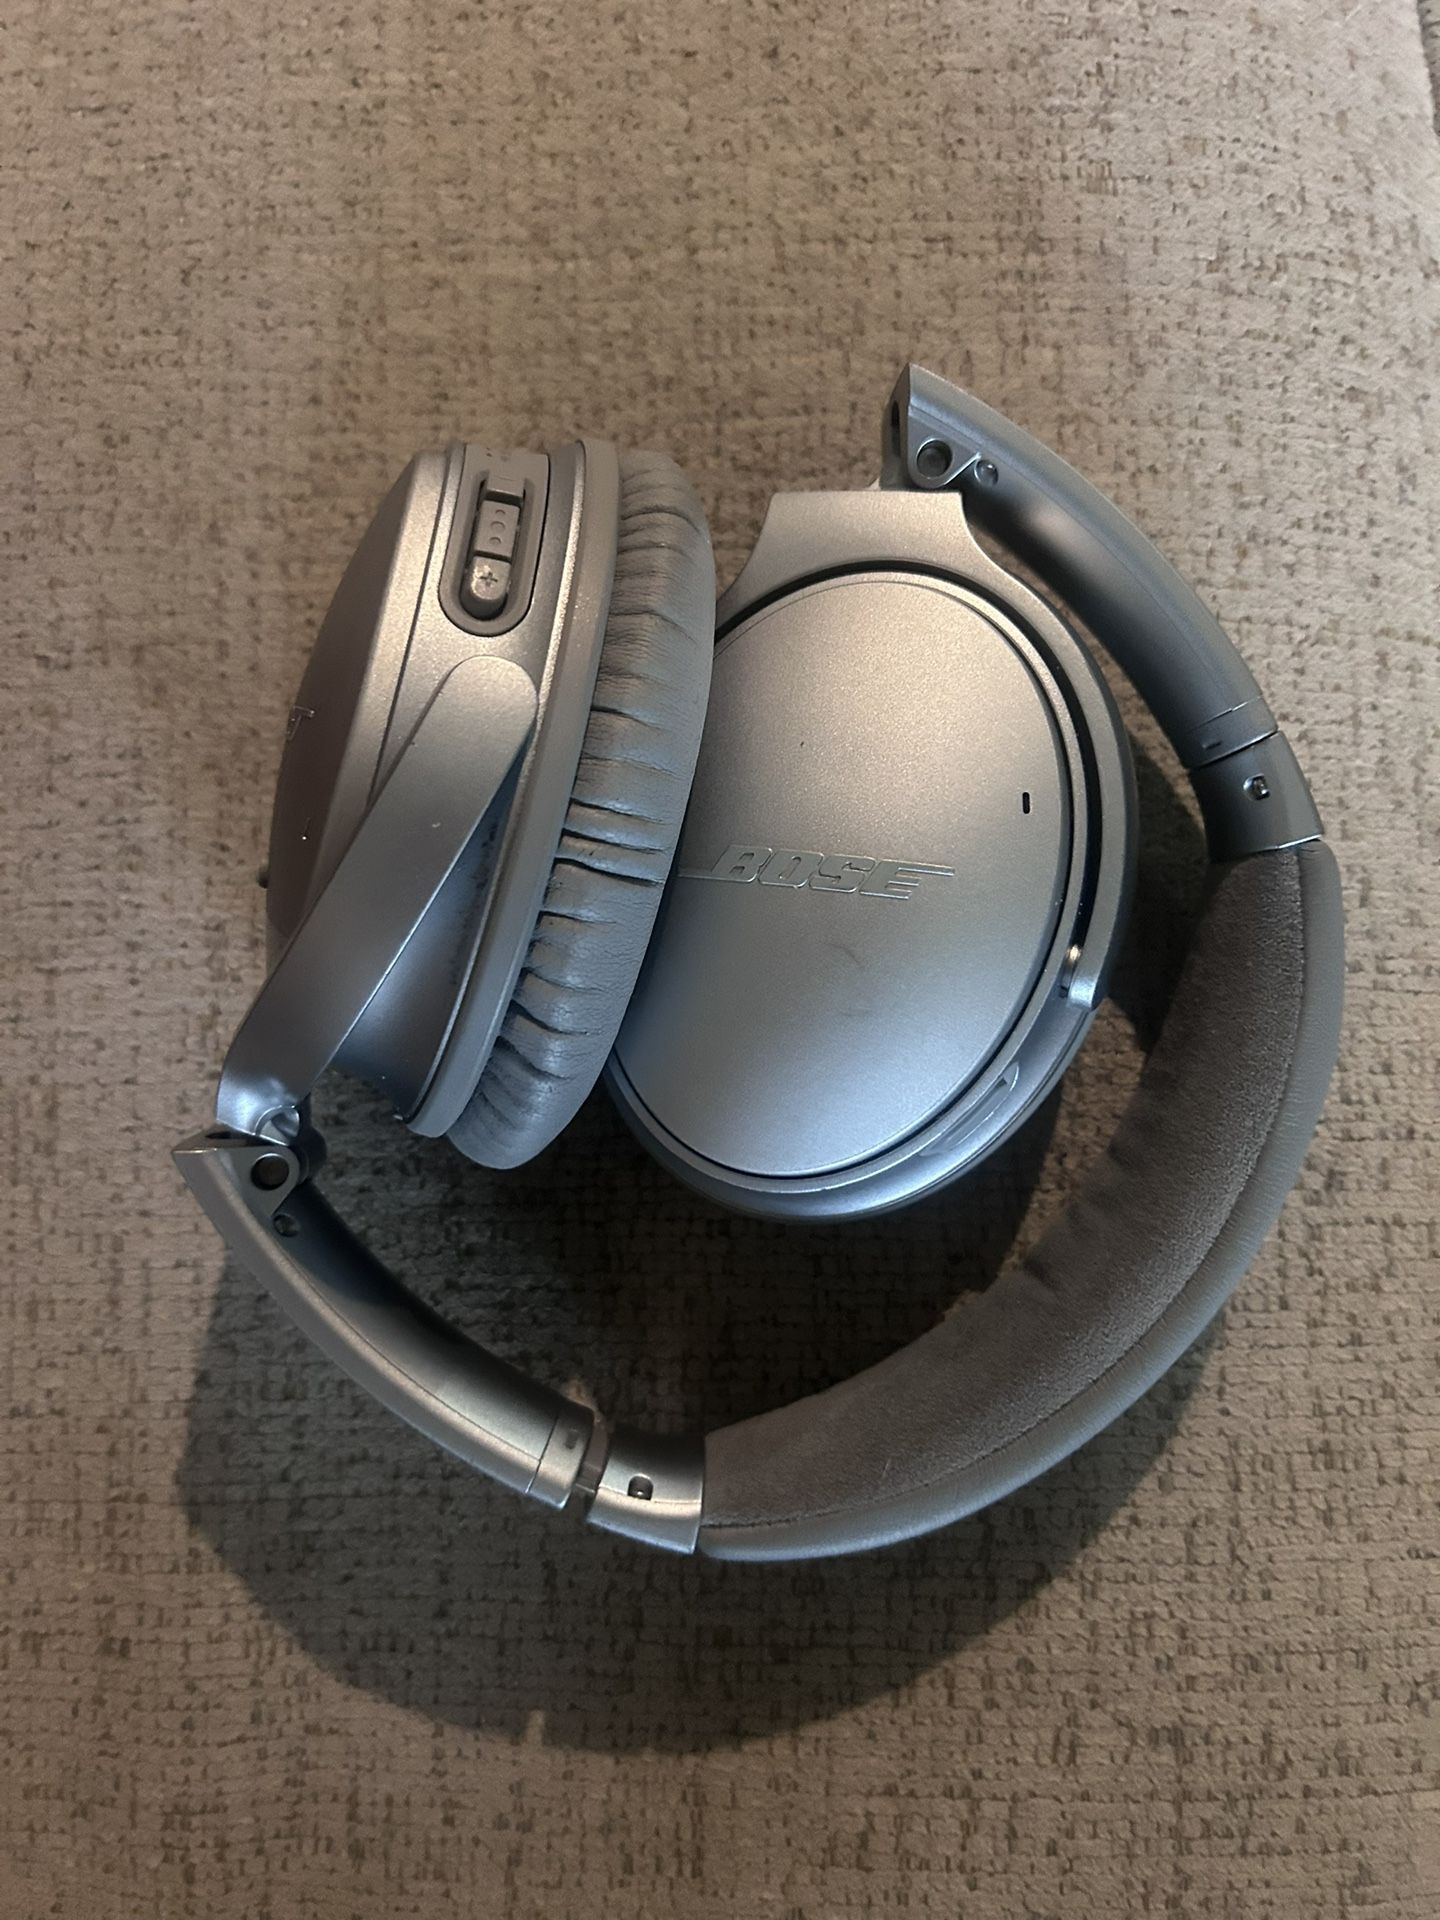 Bose Headphones Quiet Comfort 35